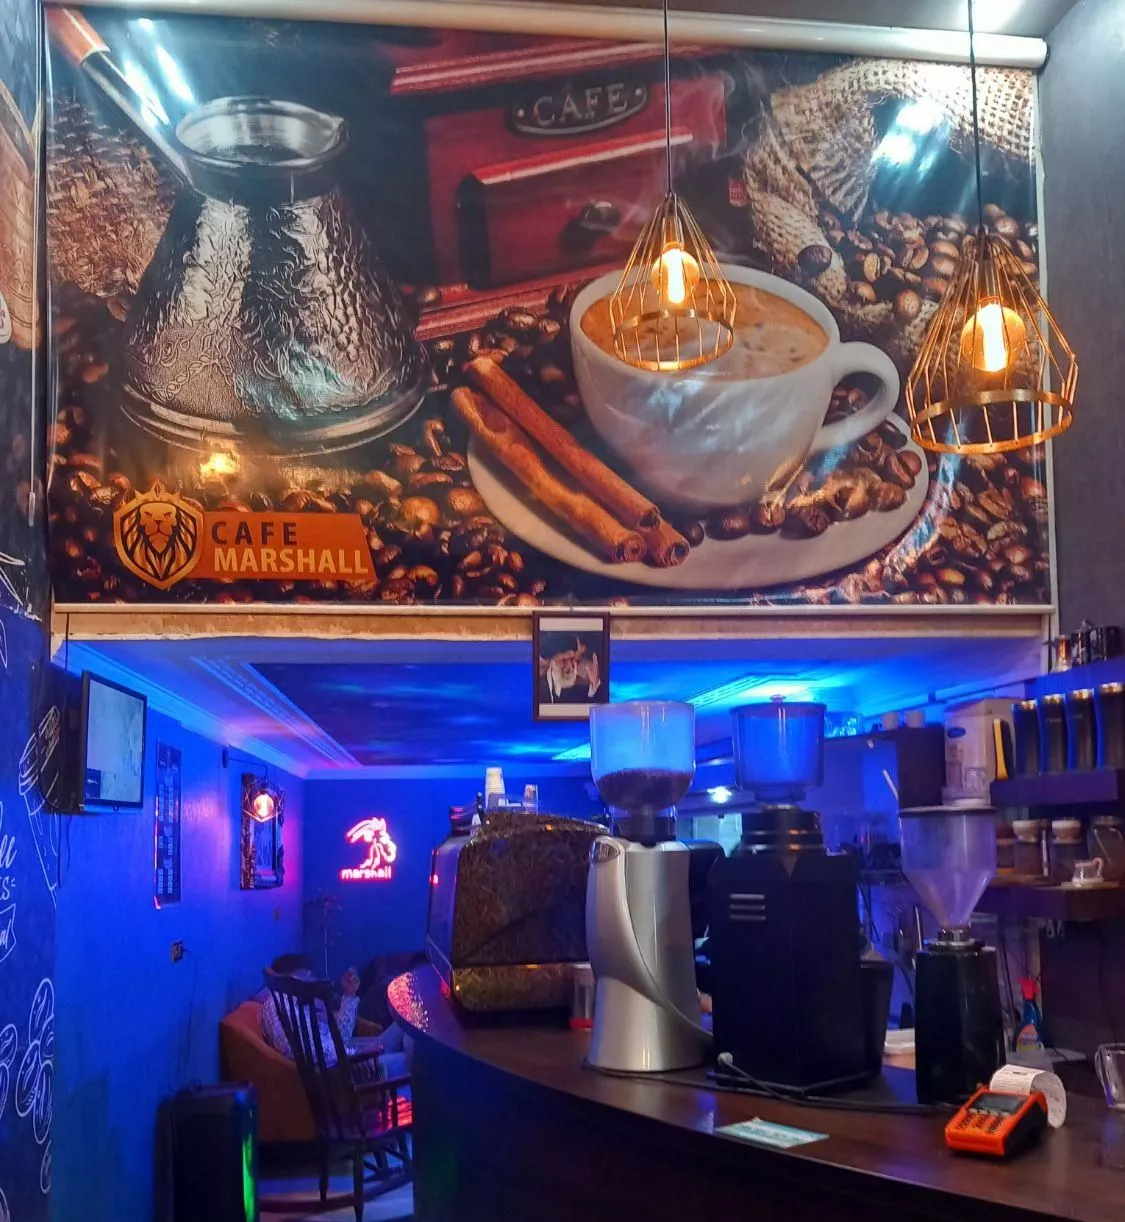 واگذاری کافه (قهوه فروشی) مرکز شهر